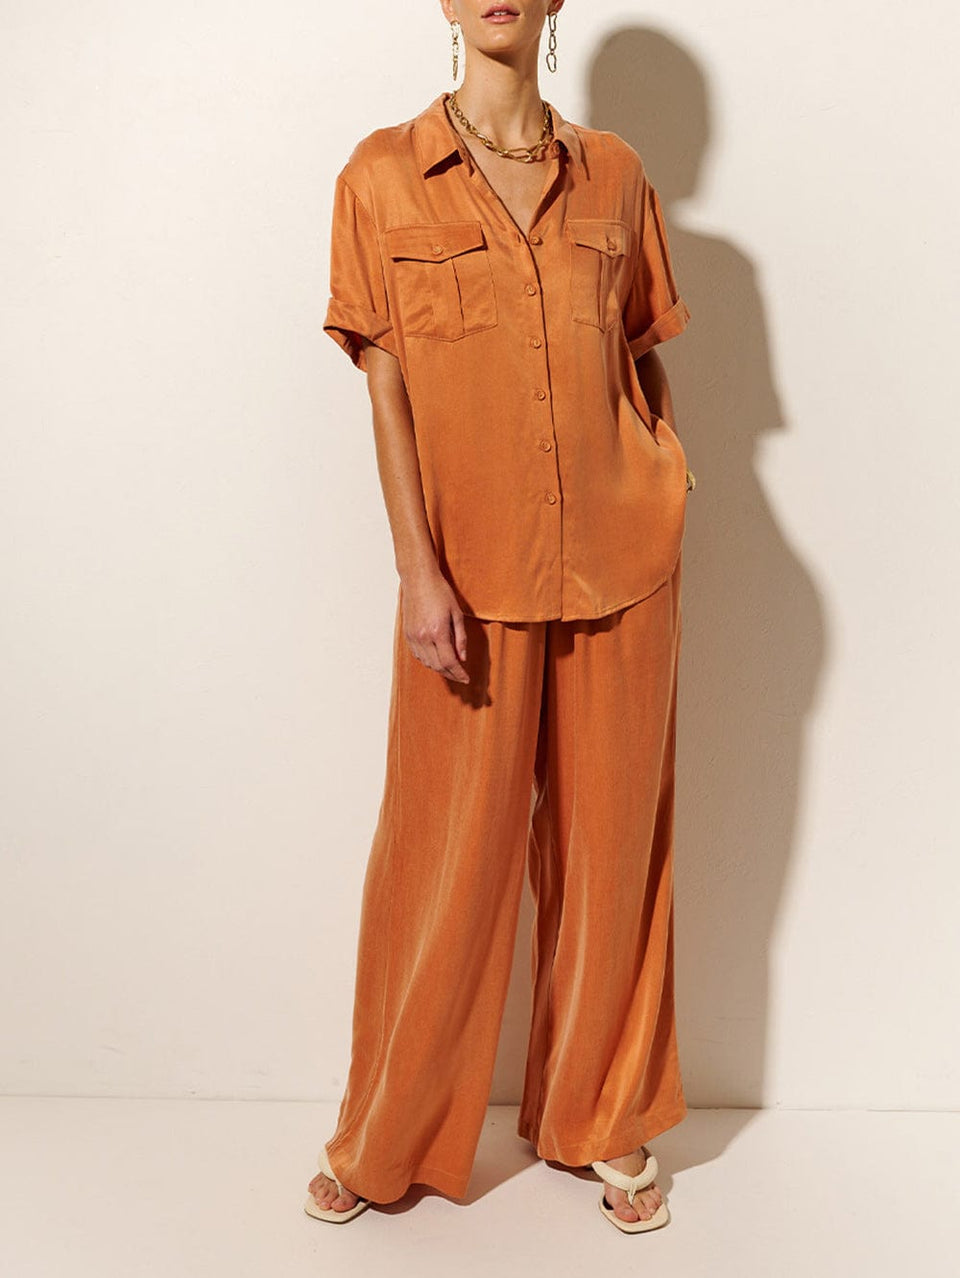 KIVARI Bianca Shirt | Model wears Orange Shirt